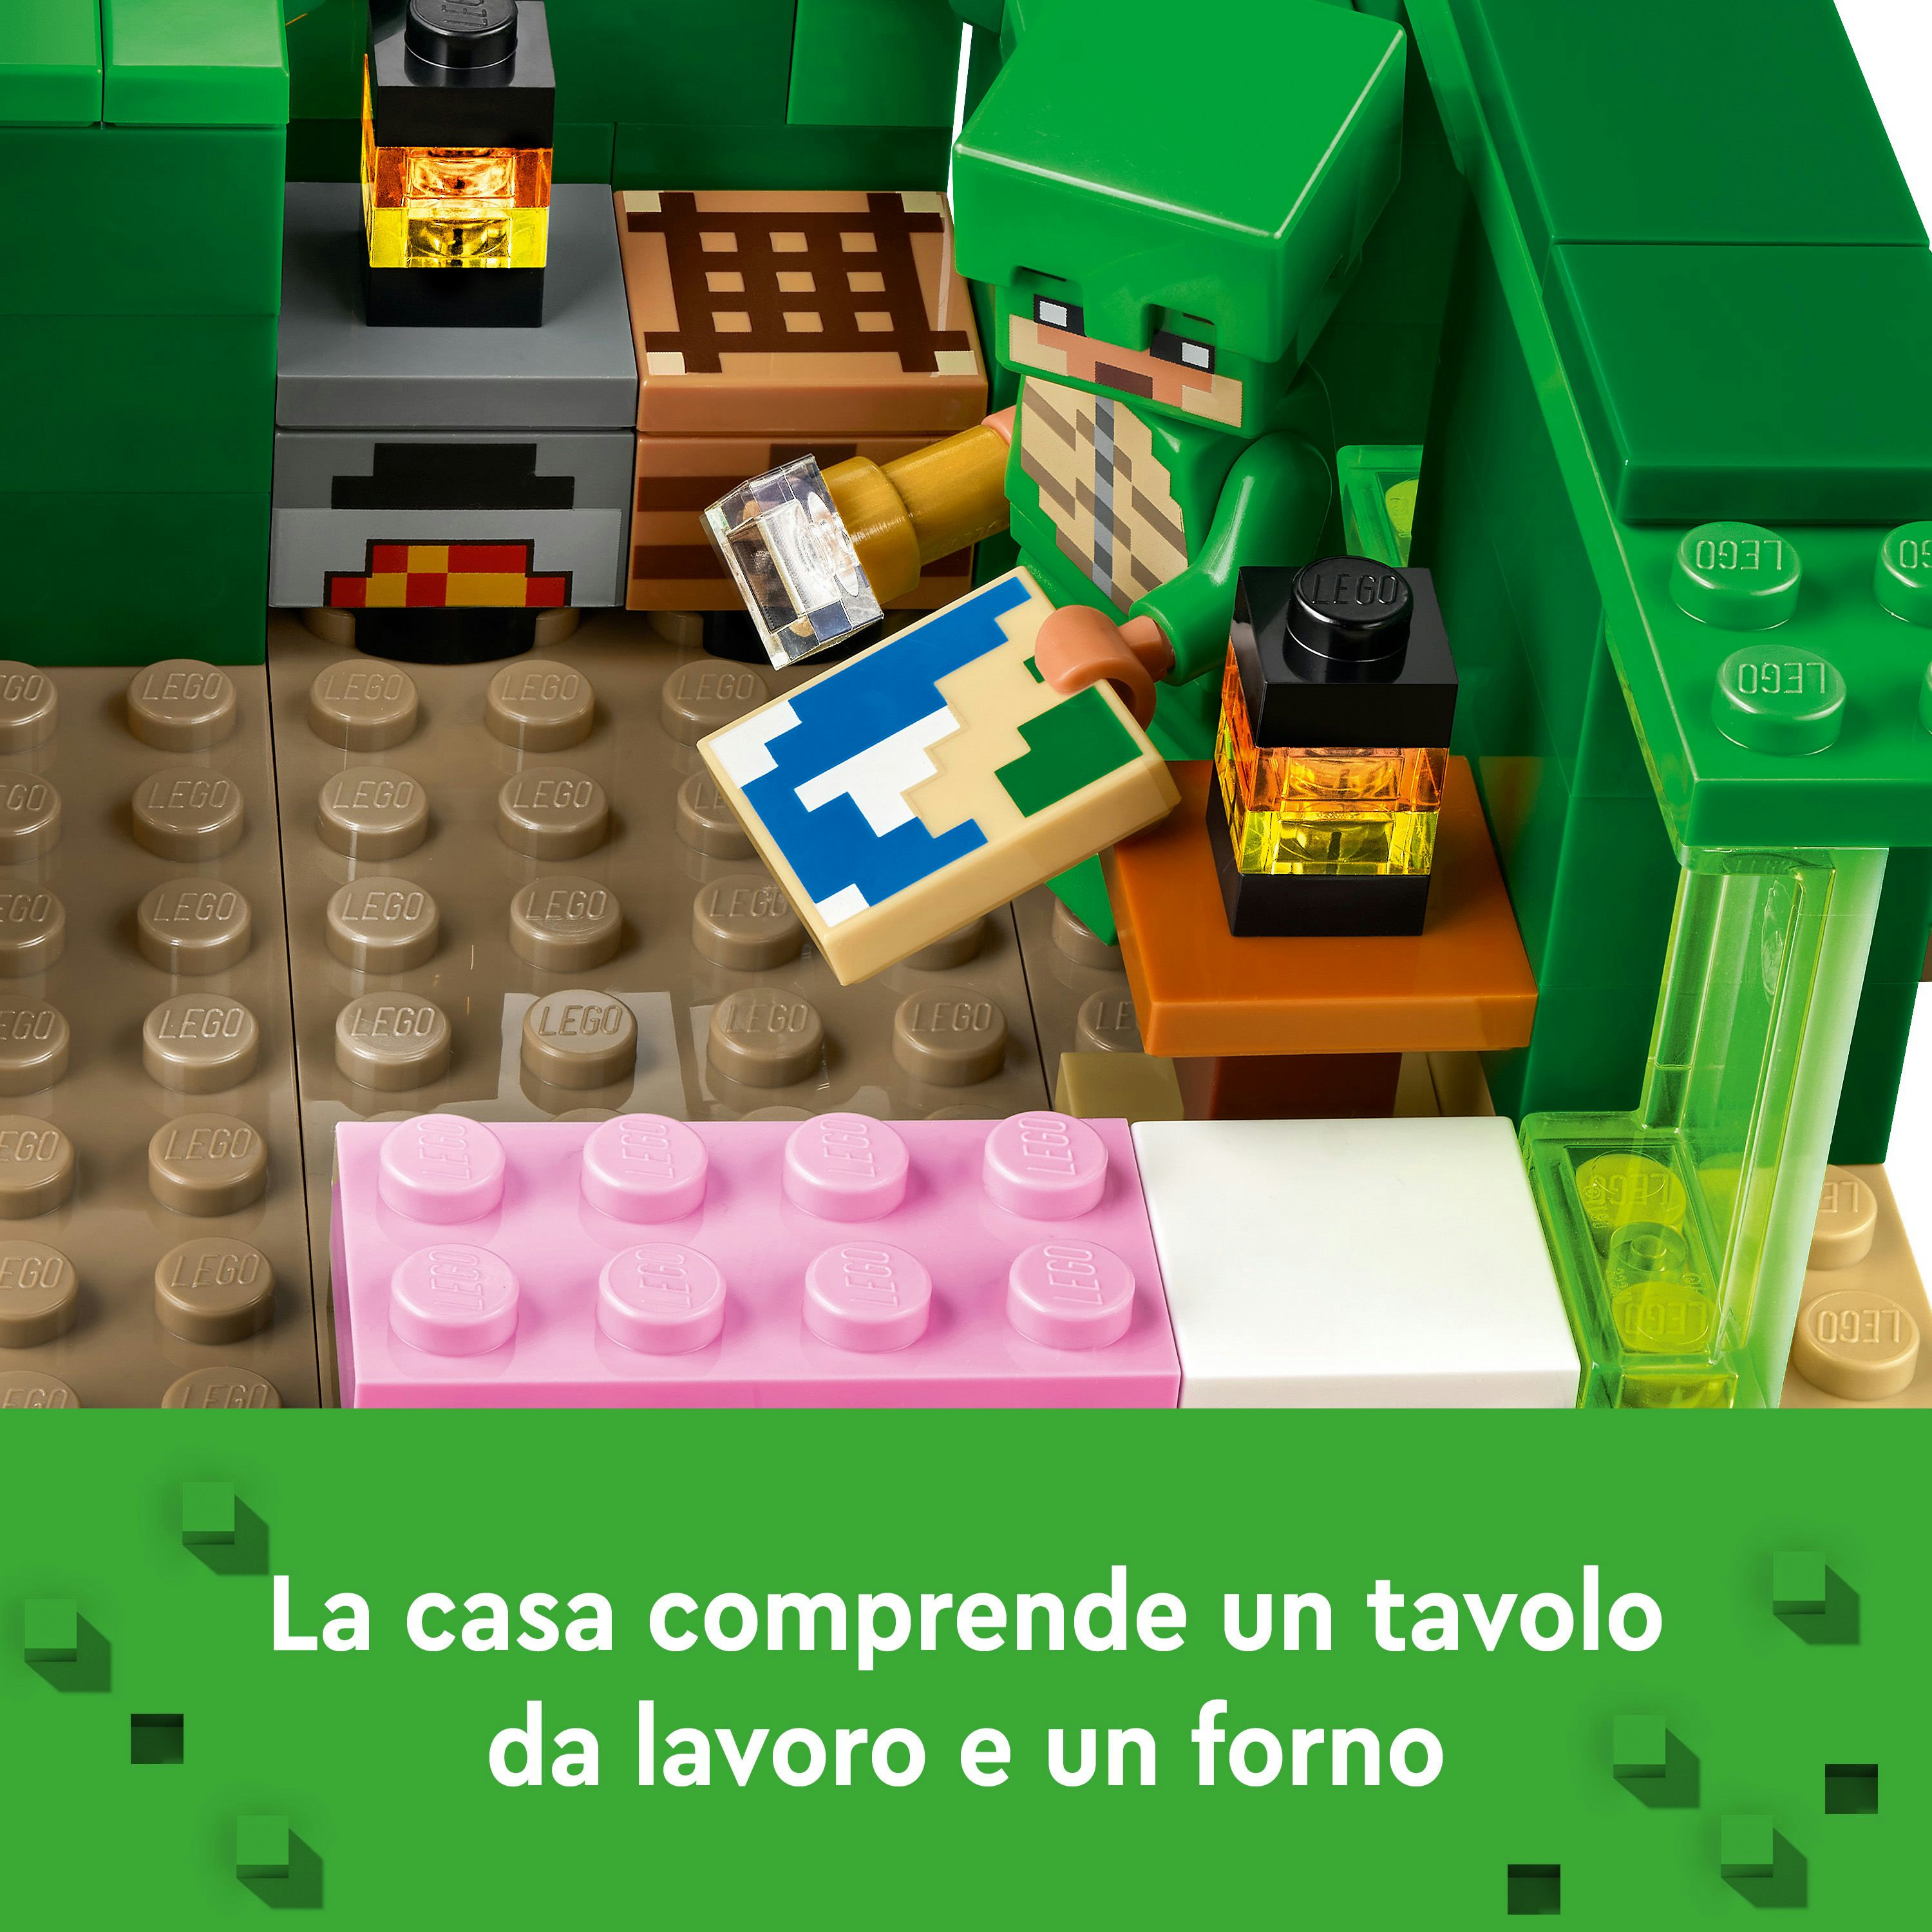 Lego minecraft 21254 beach house della tartaruga, casa giocattolo da costruire per bambini di 8+ anni con personaggi e animali - MINECRAFT